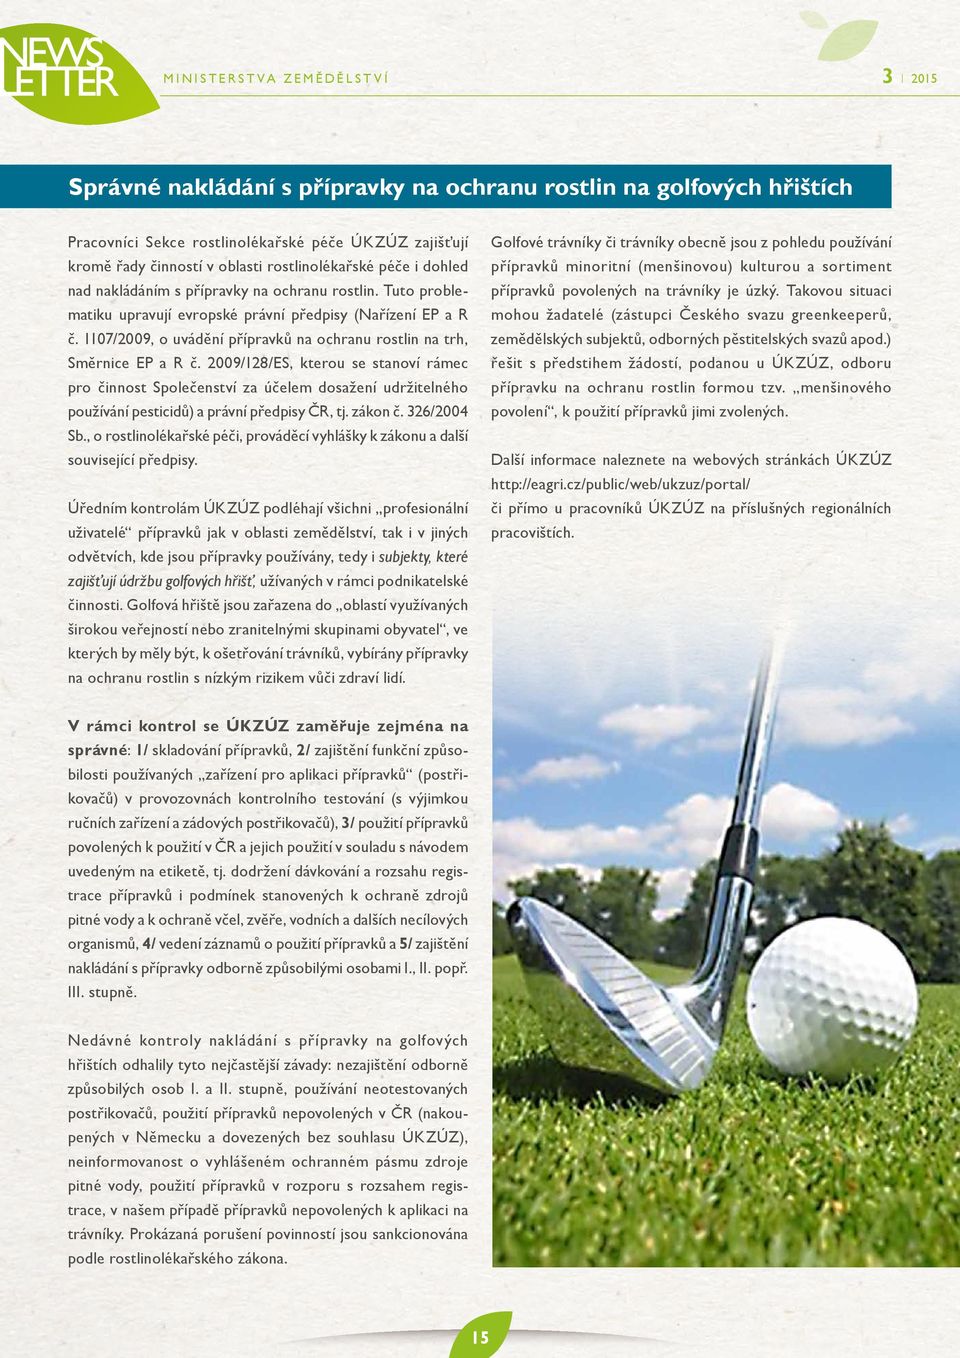 2009/128/ES, kterou se stanoví rámec pro činnost Společenství za účelem dosažení udržitelného používání pesticidů) a právní předpisy ČR, tj. zákon č. 326/2004 Sb.